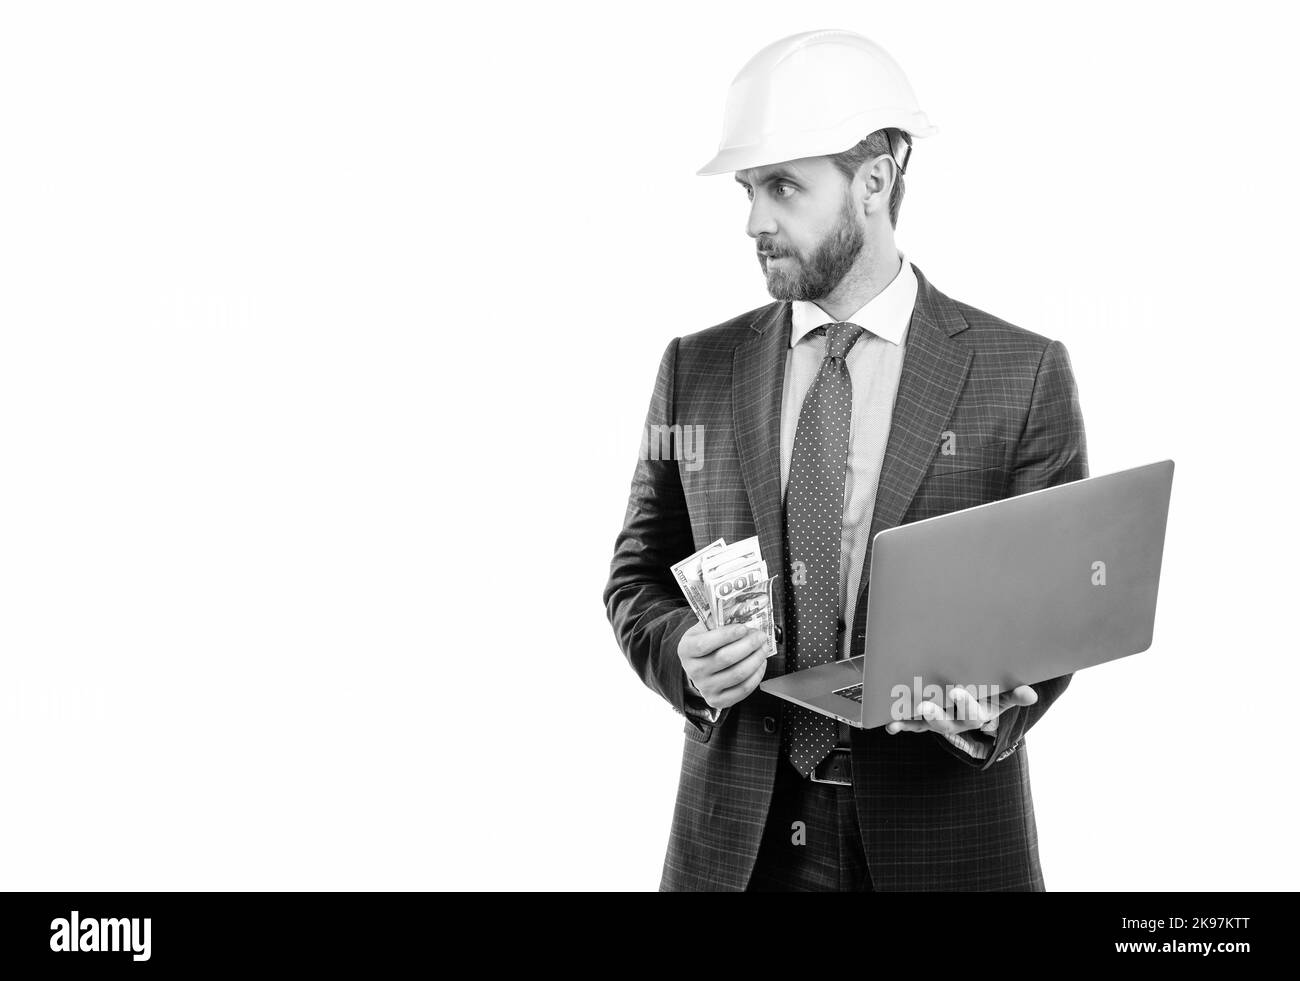 Homme ingénieur professionnel en casque et costume tenir l'argent et l'ordinateur portable, coût de travail Banque D'Images